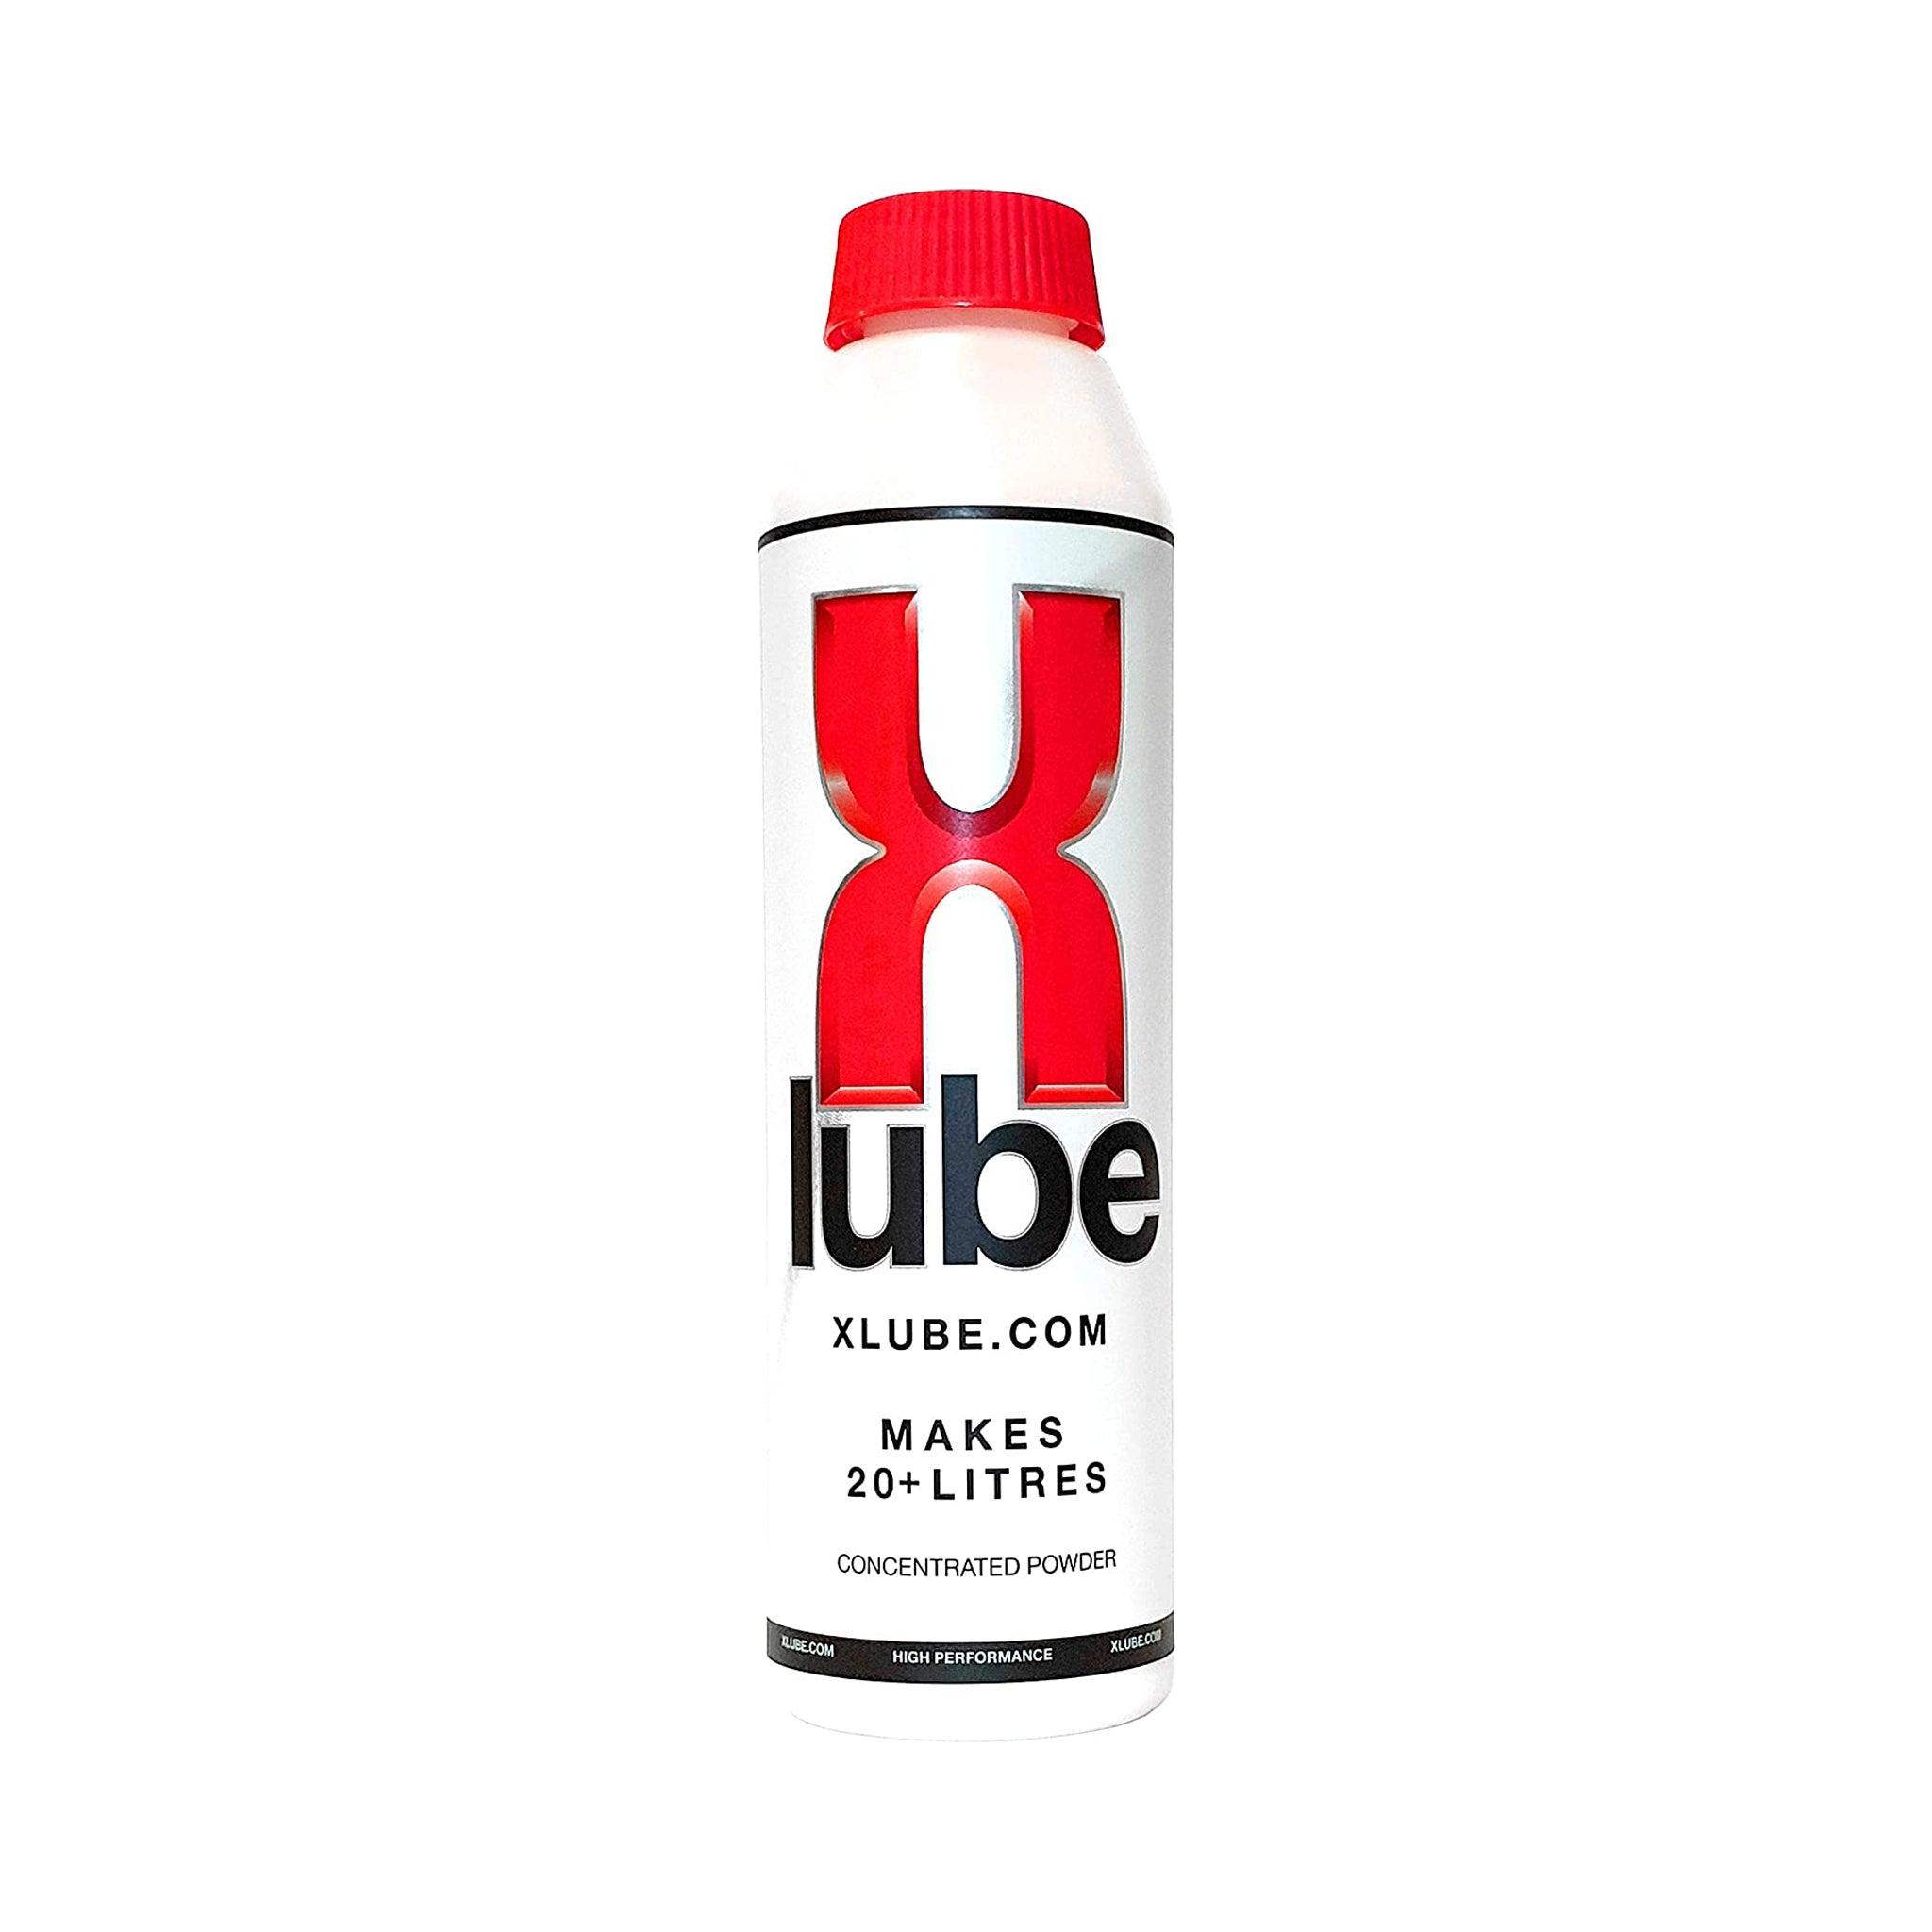 J-lube Powder - 1 oz bottle